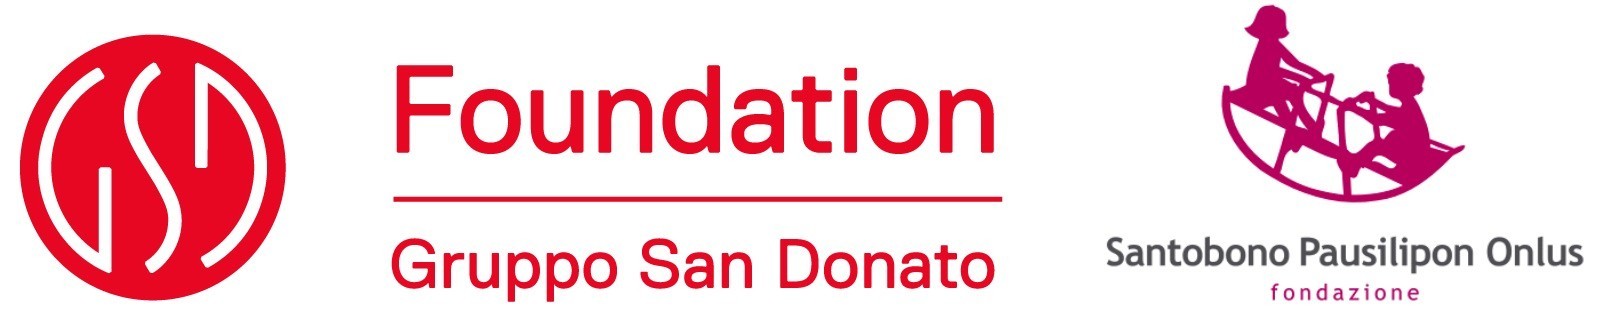 Gruppo San Donato Foundation e Fondazione Santobono Pausilipon